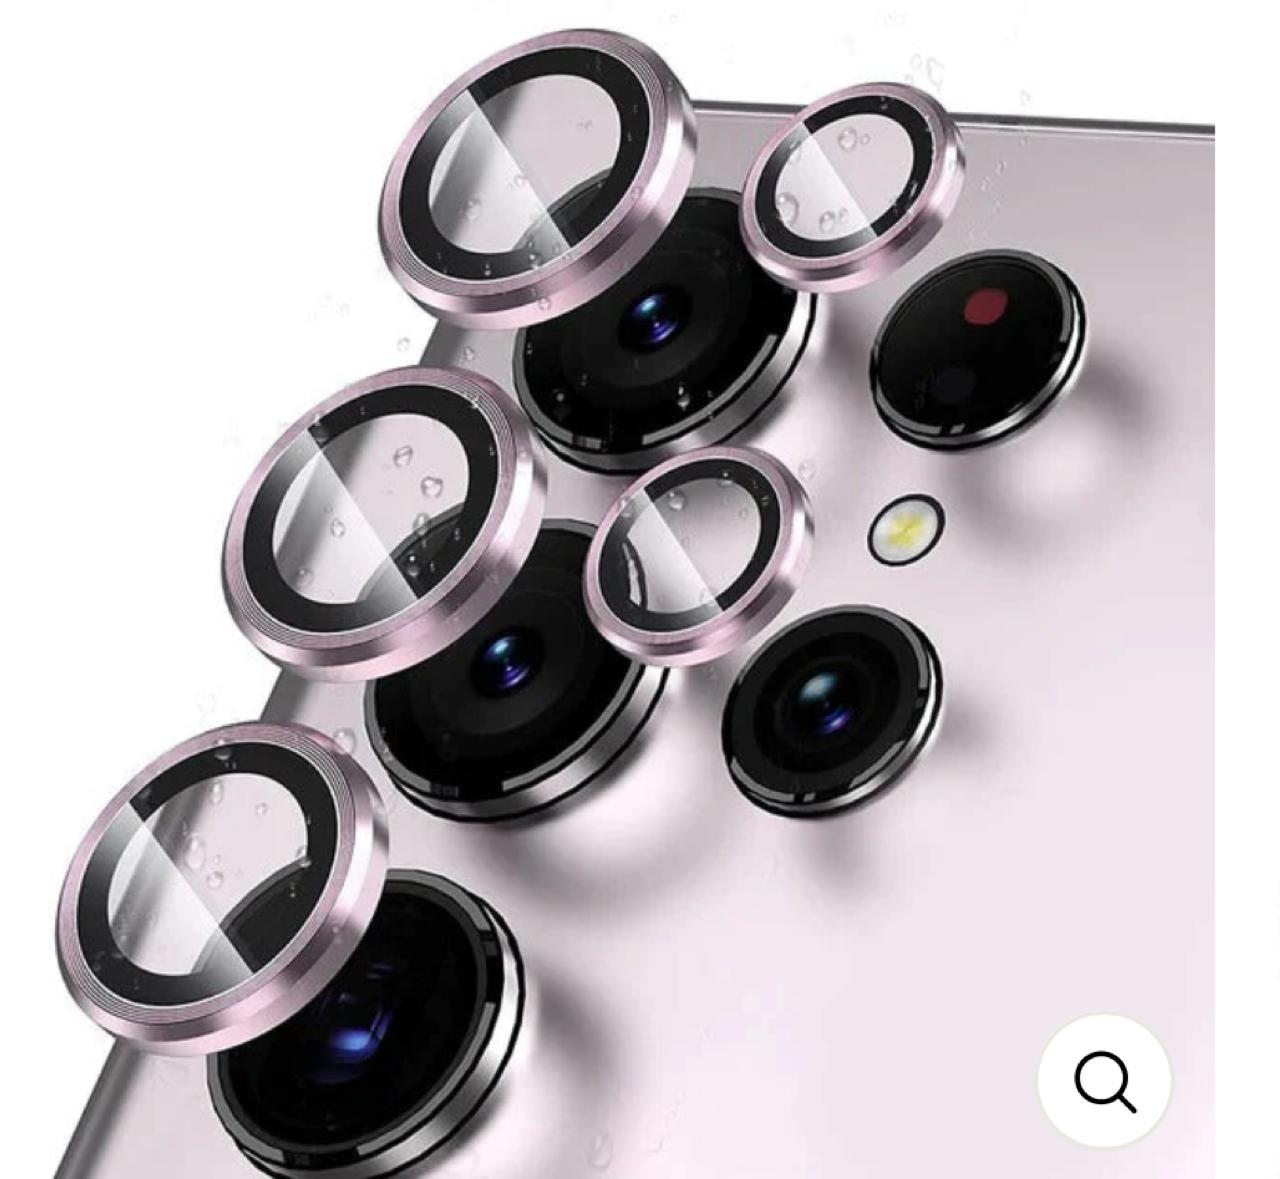 Titanium Camera Lense Protector 9H Aluminium Ring - Samsung